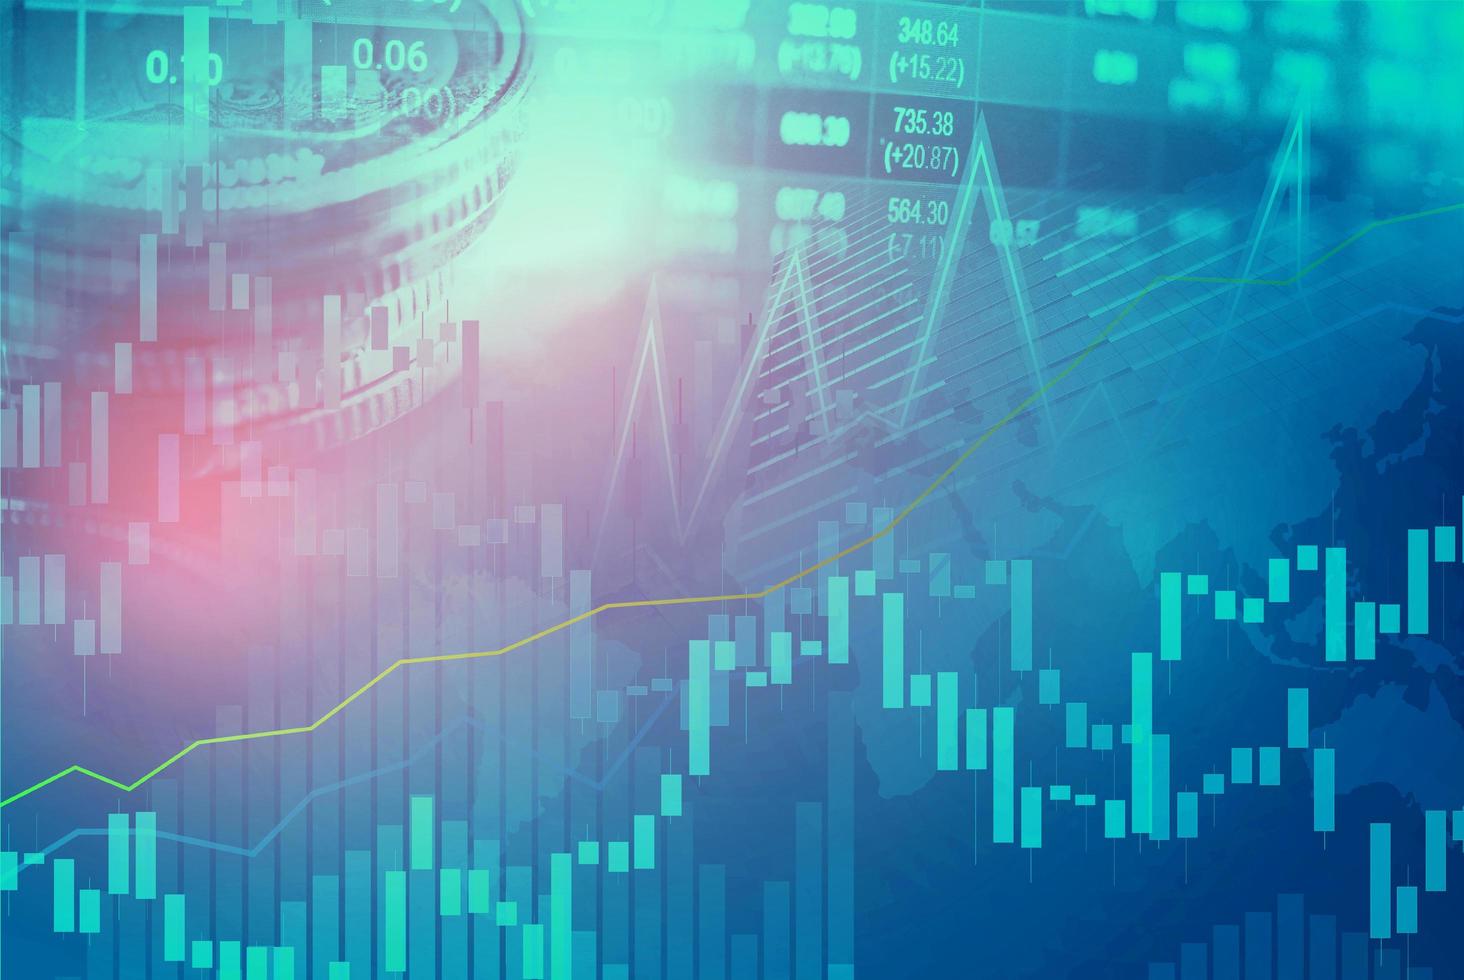 mercado de valores, inversión, comercio, financiero, gráfico de monedas y gráfico o forex para analizar el fondo de datos de tendencias de negocios de finanzas de ganancias. foto